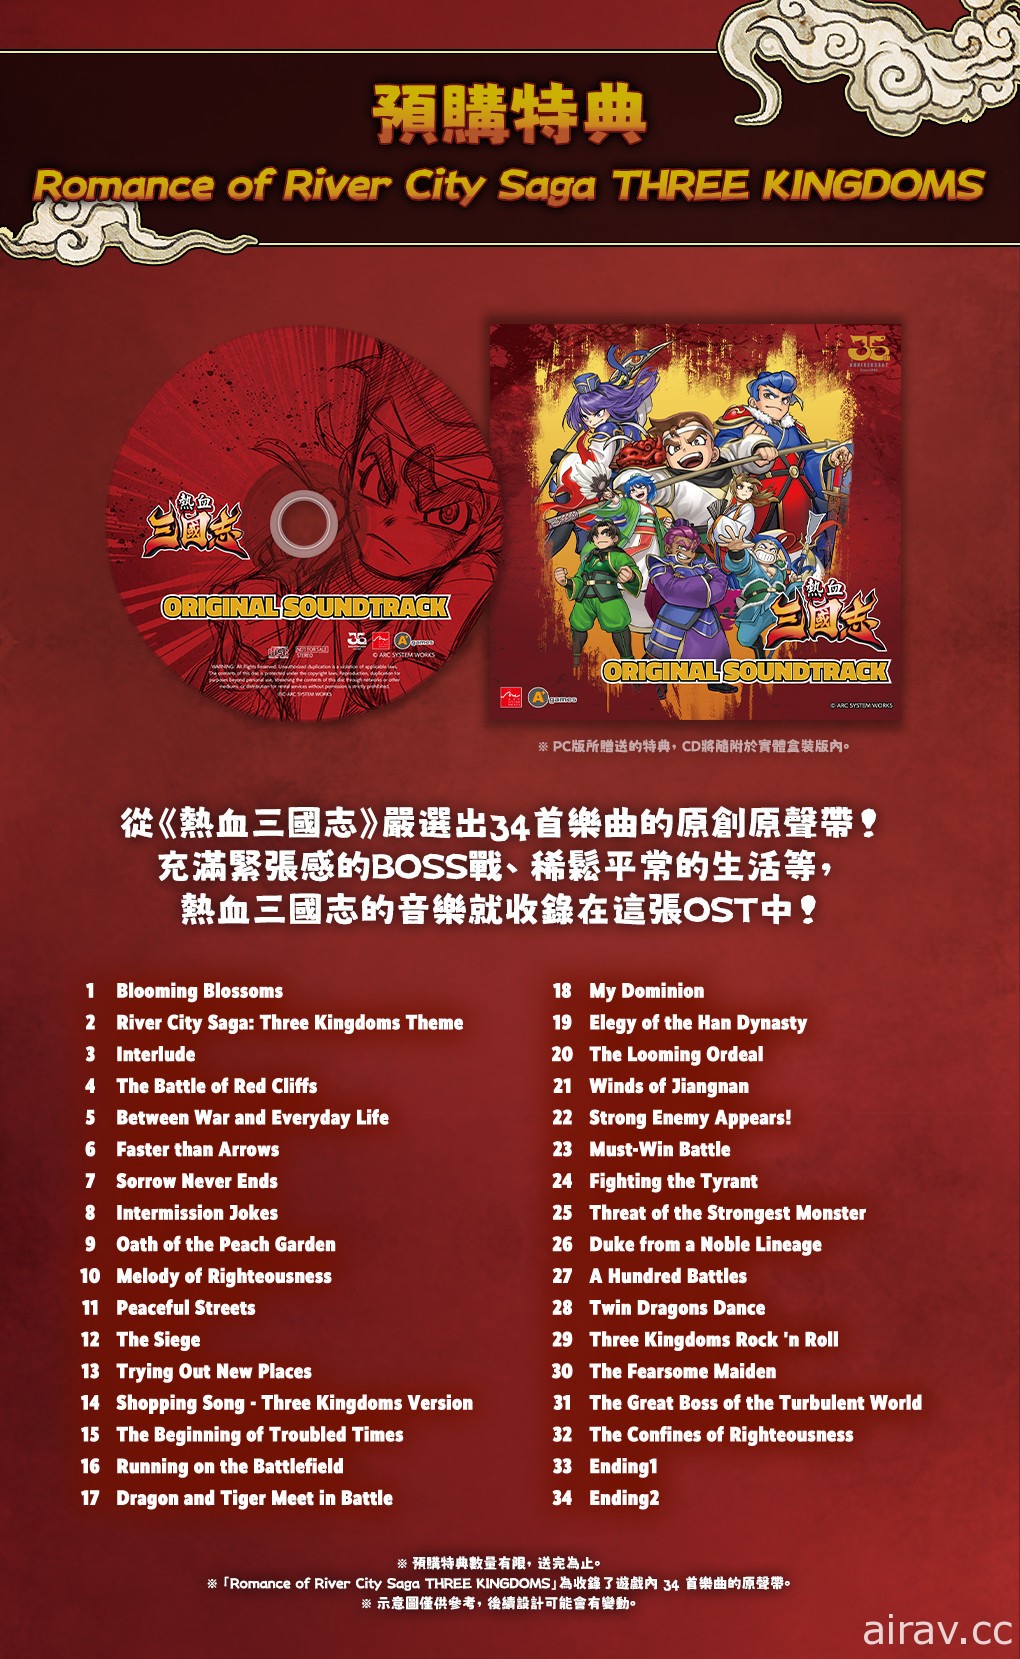 《國夫君的熱血三國志》中文版公開實體盒裝版預售資訊 將提供原聲帶 CD 為特典